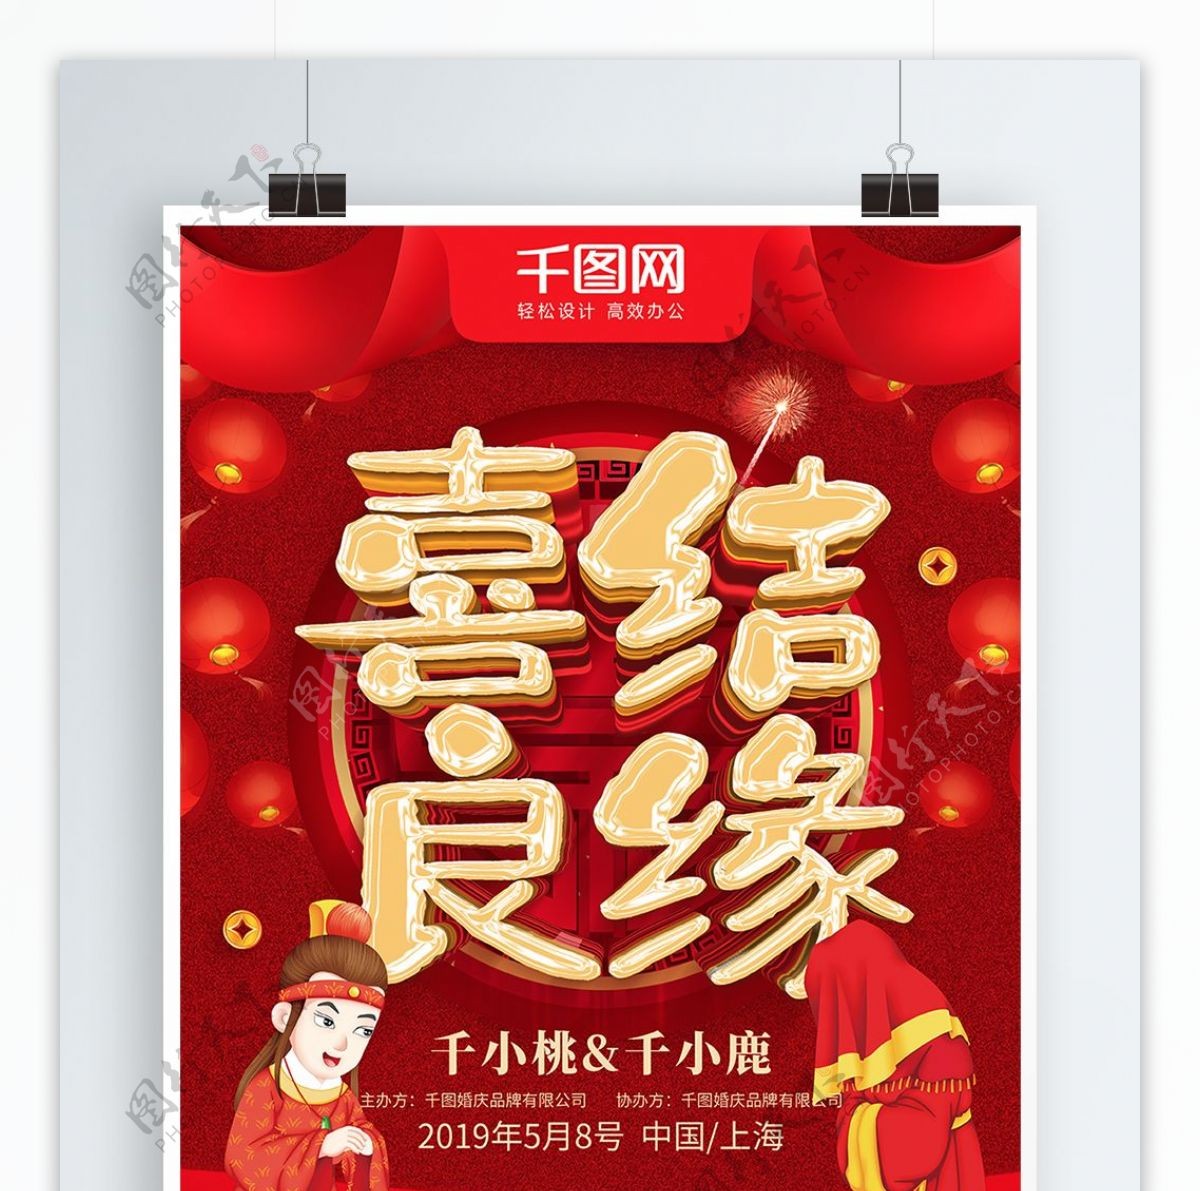 红色喜庆喜结良缘中式婚礼宣传海报